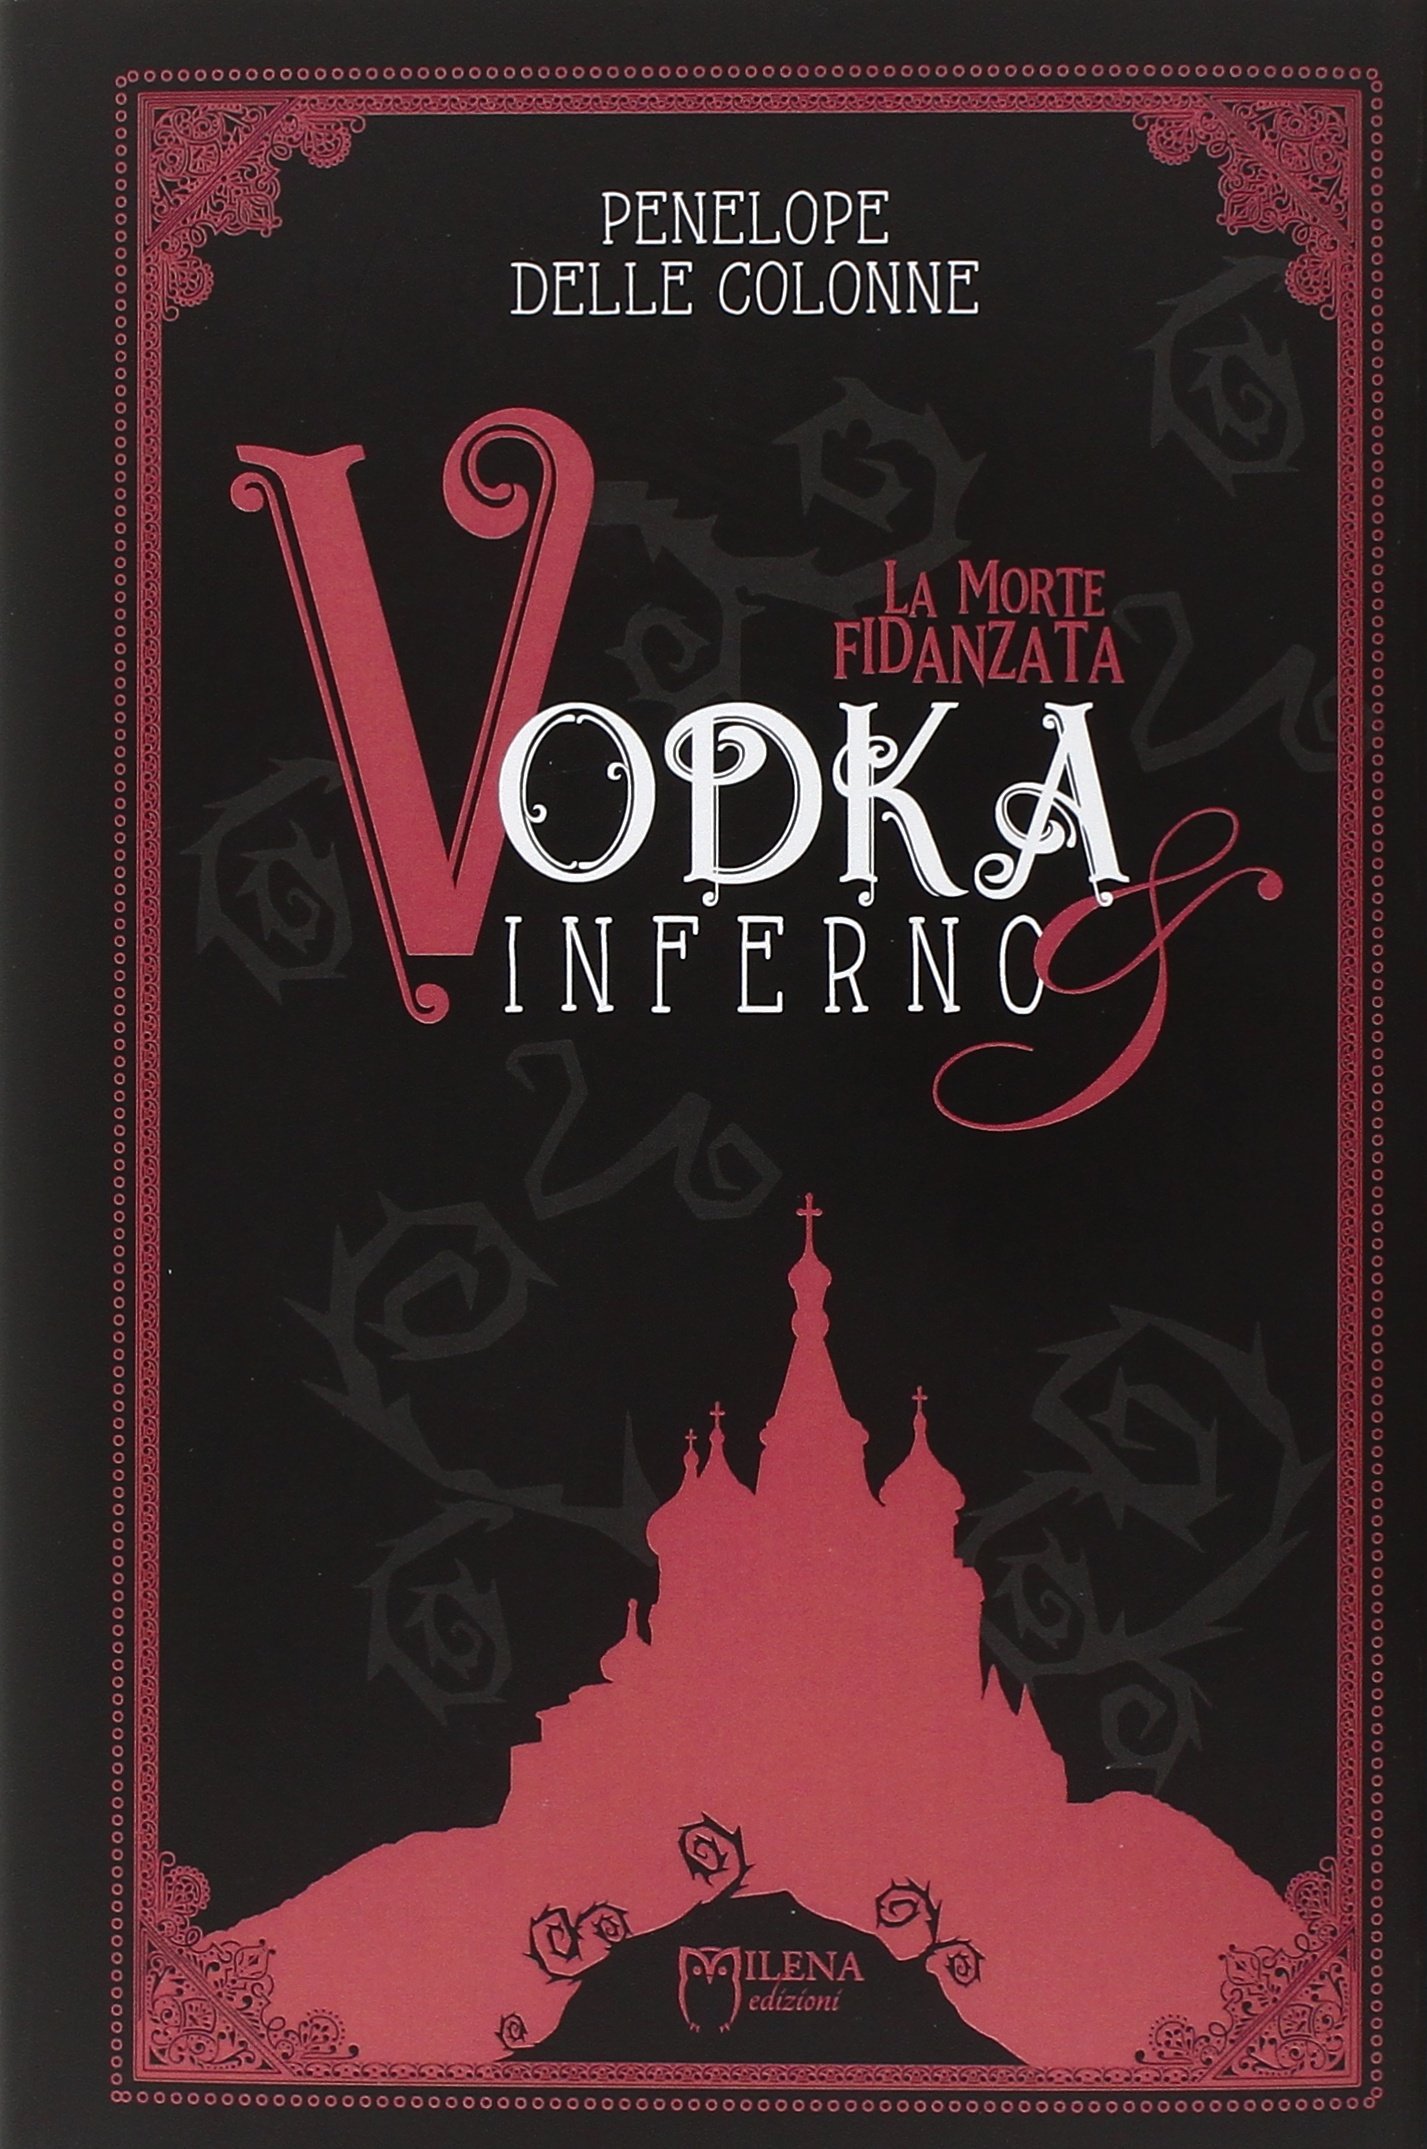 La morte fidanzata. Vodka & inferno Vol. 1 morte della fidanzata, La di Penelope Delle Colonne